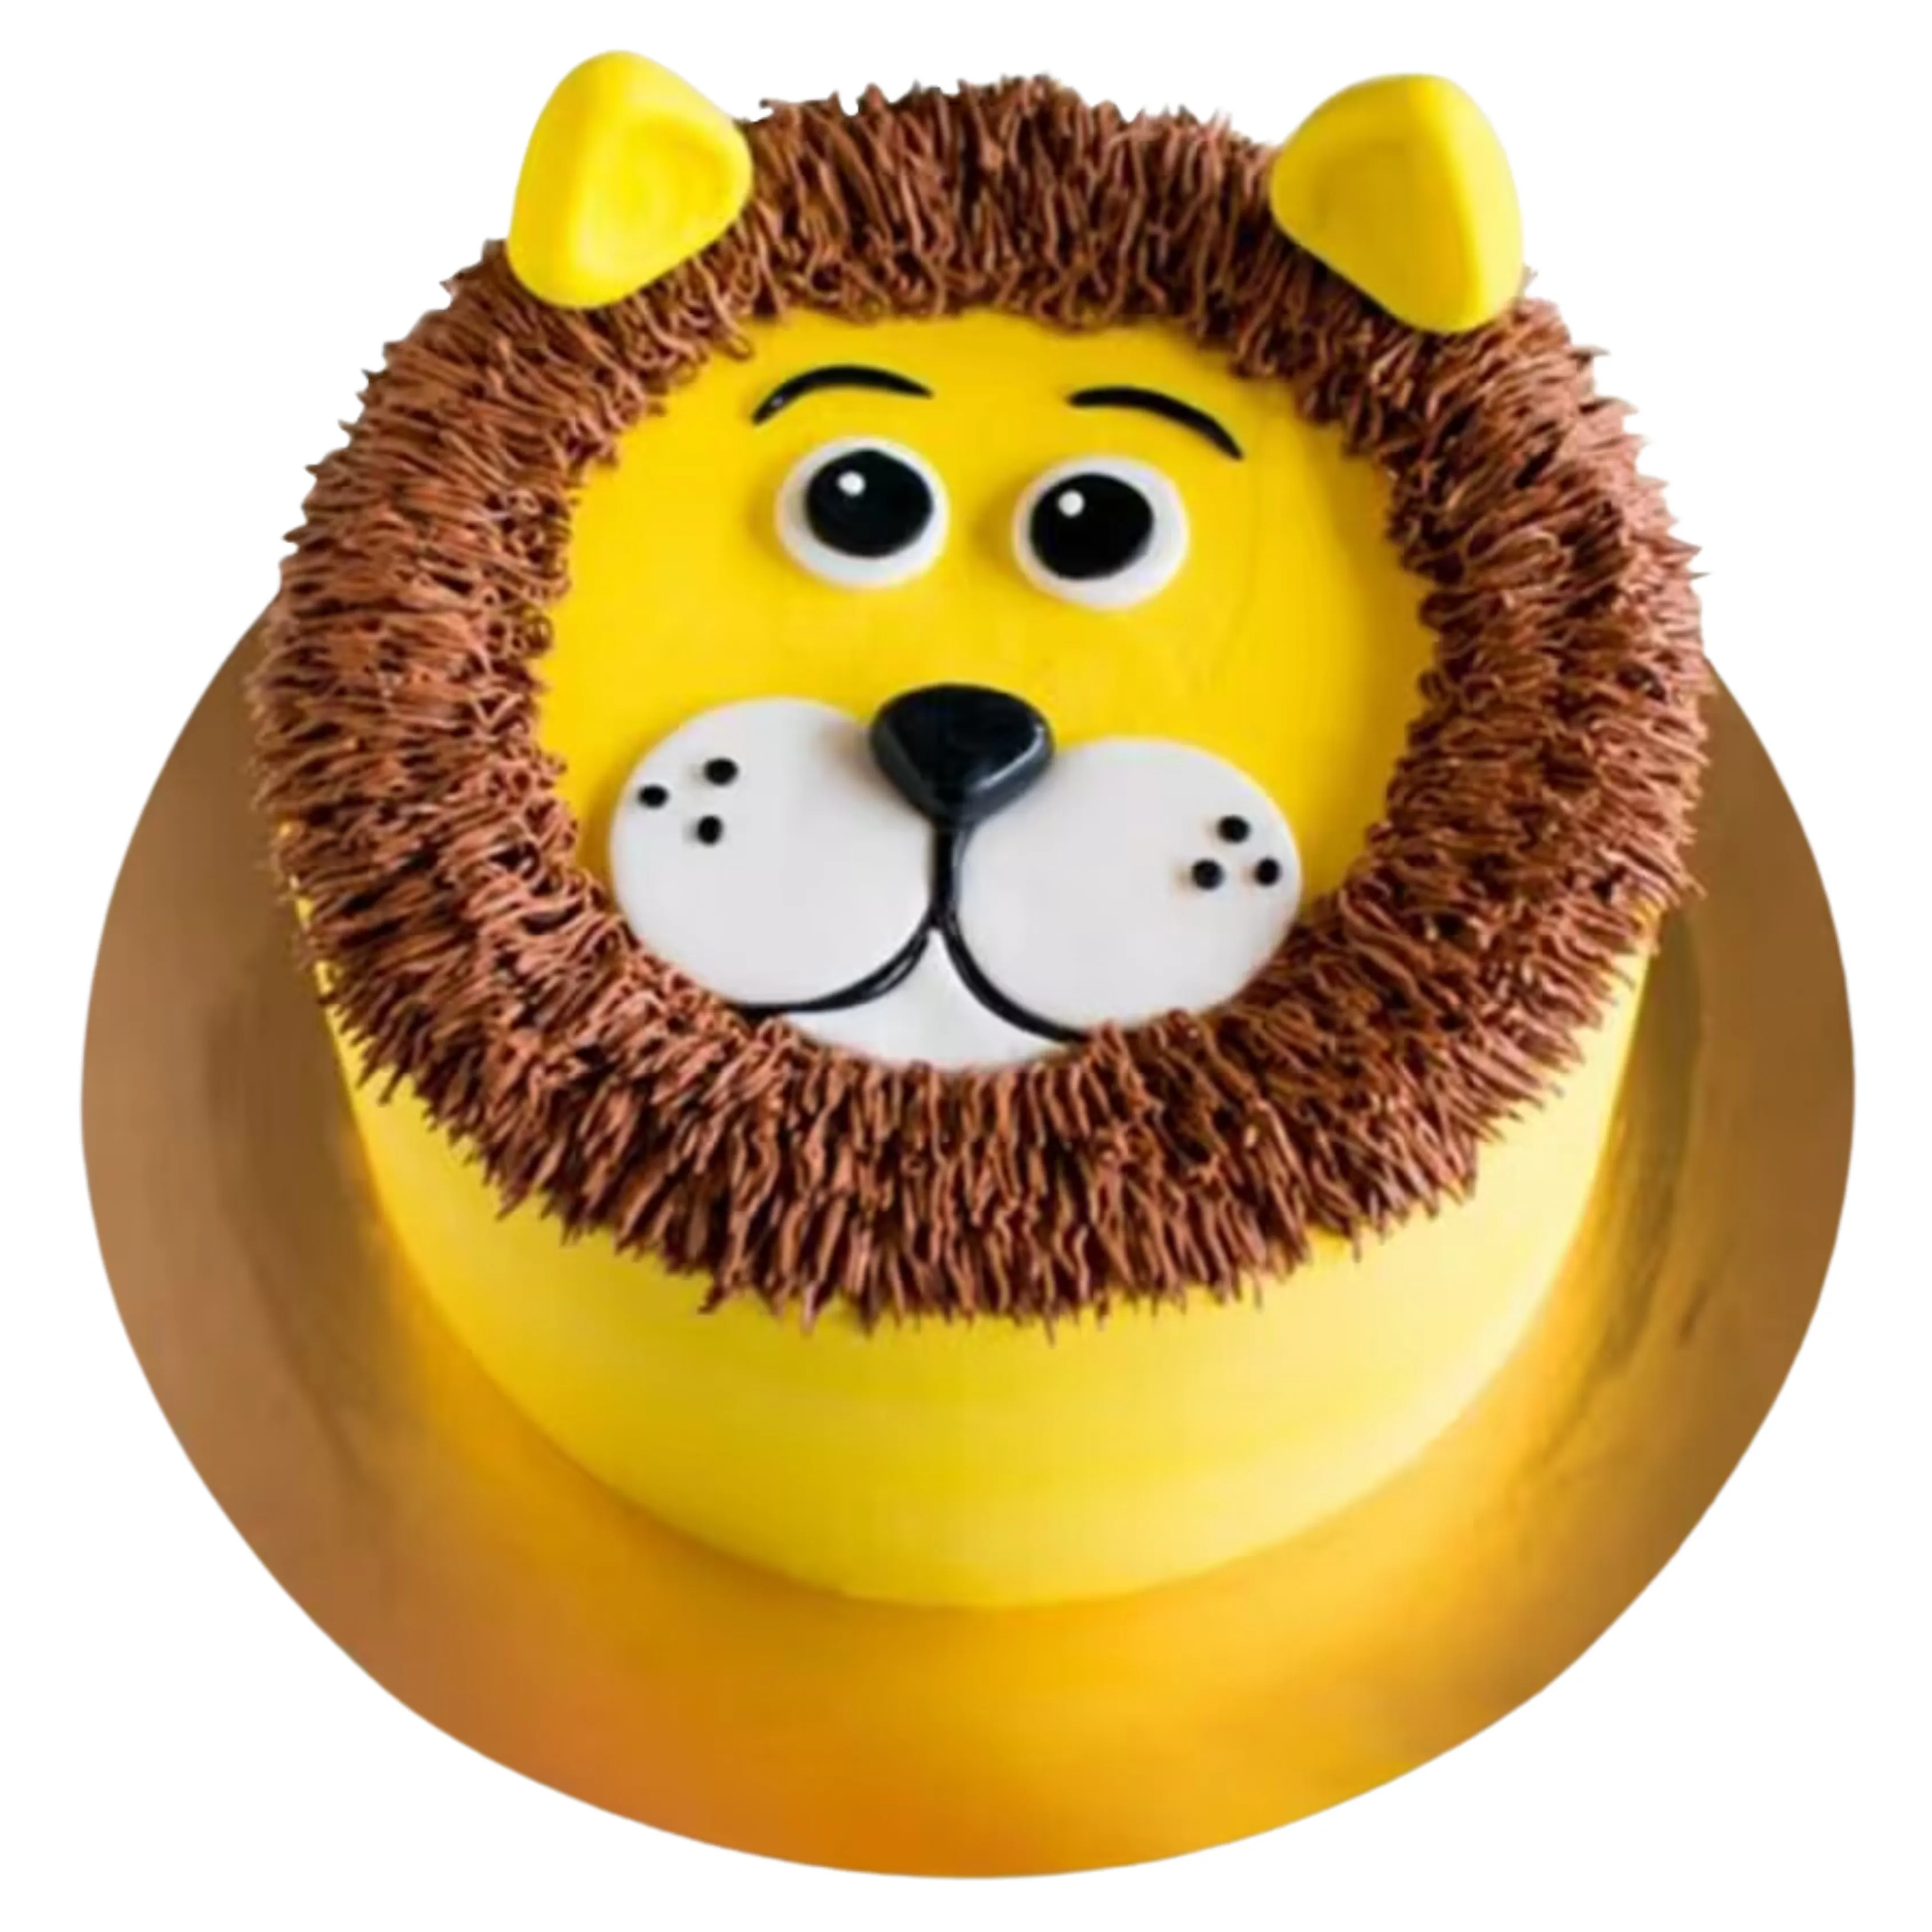 Lion Cream Cake